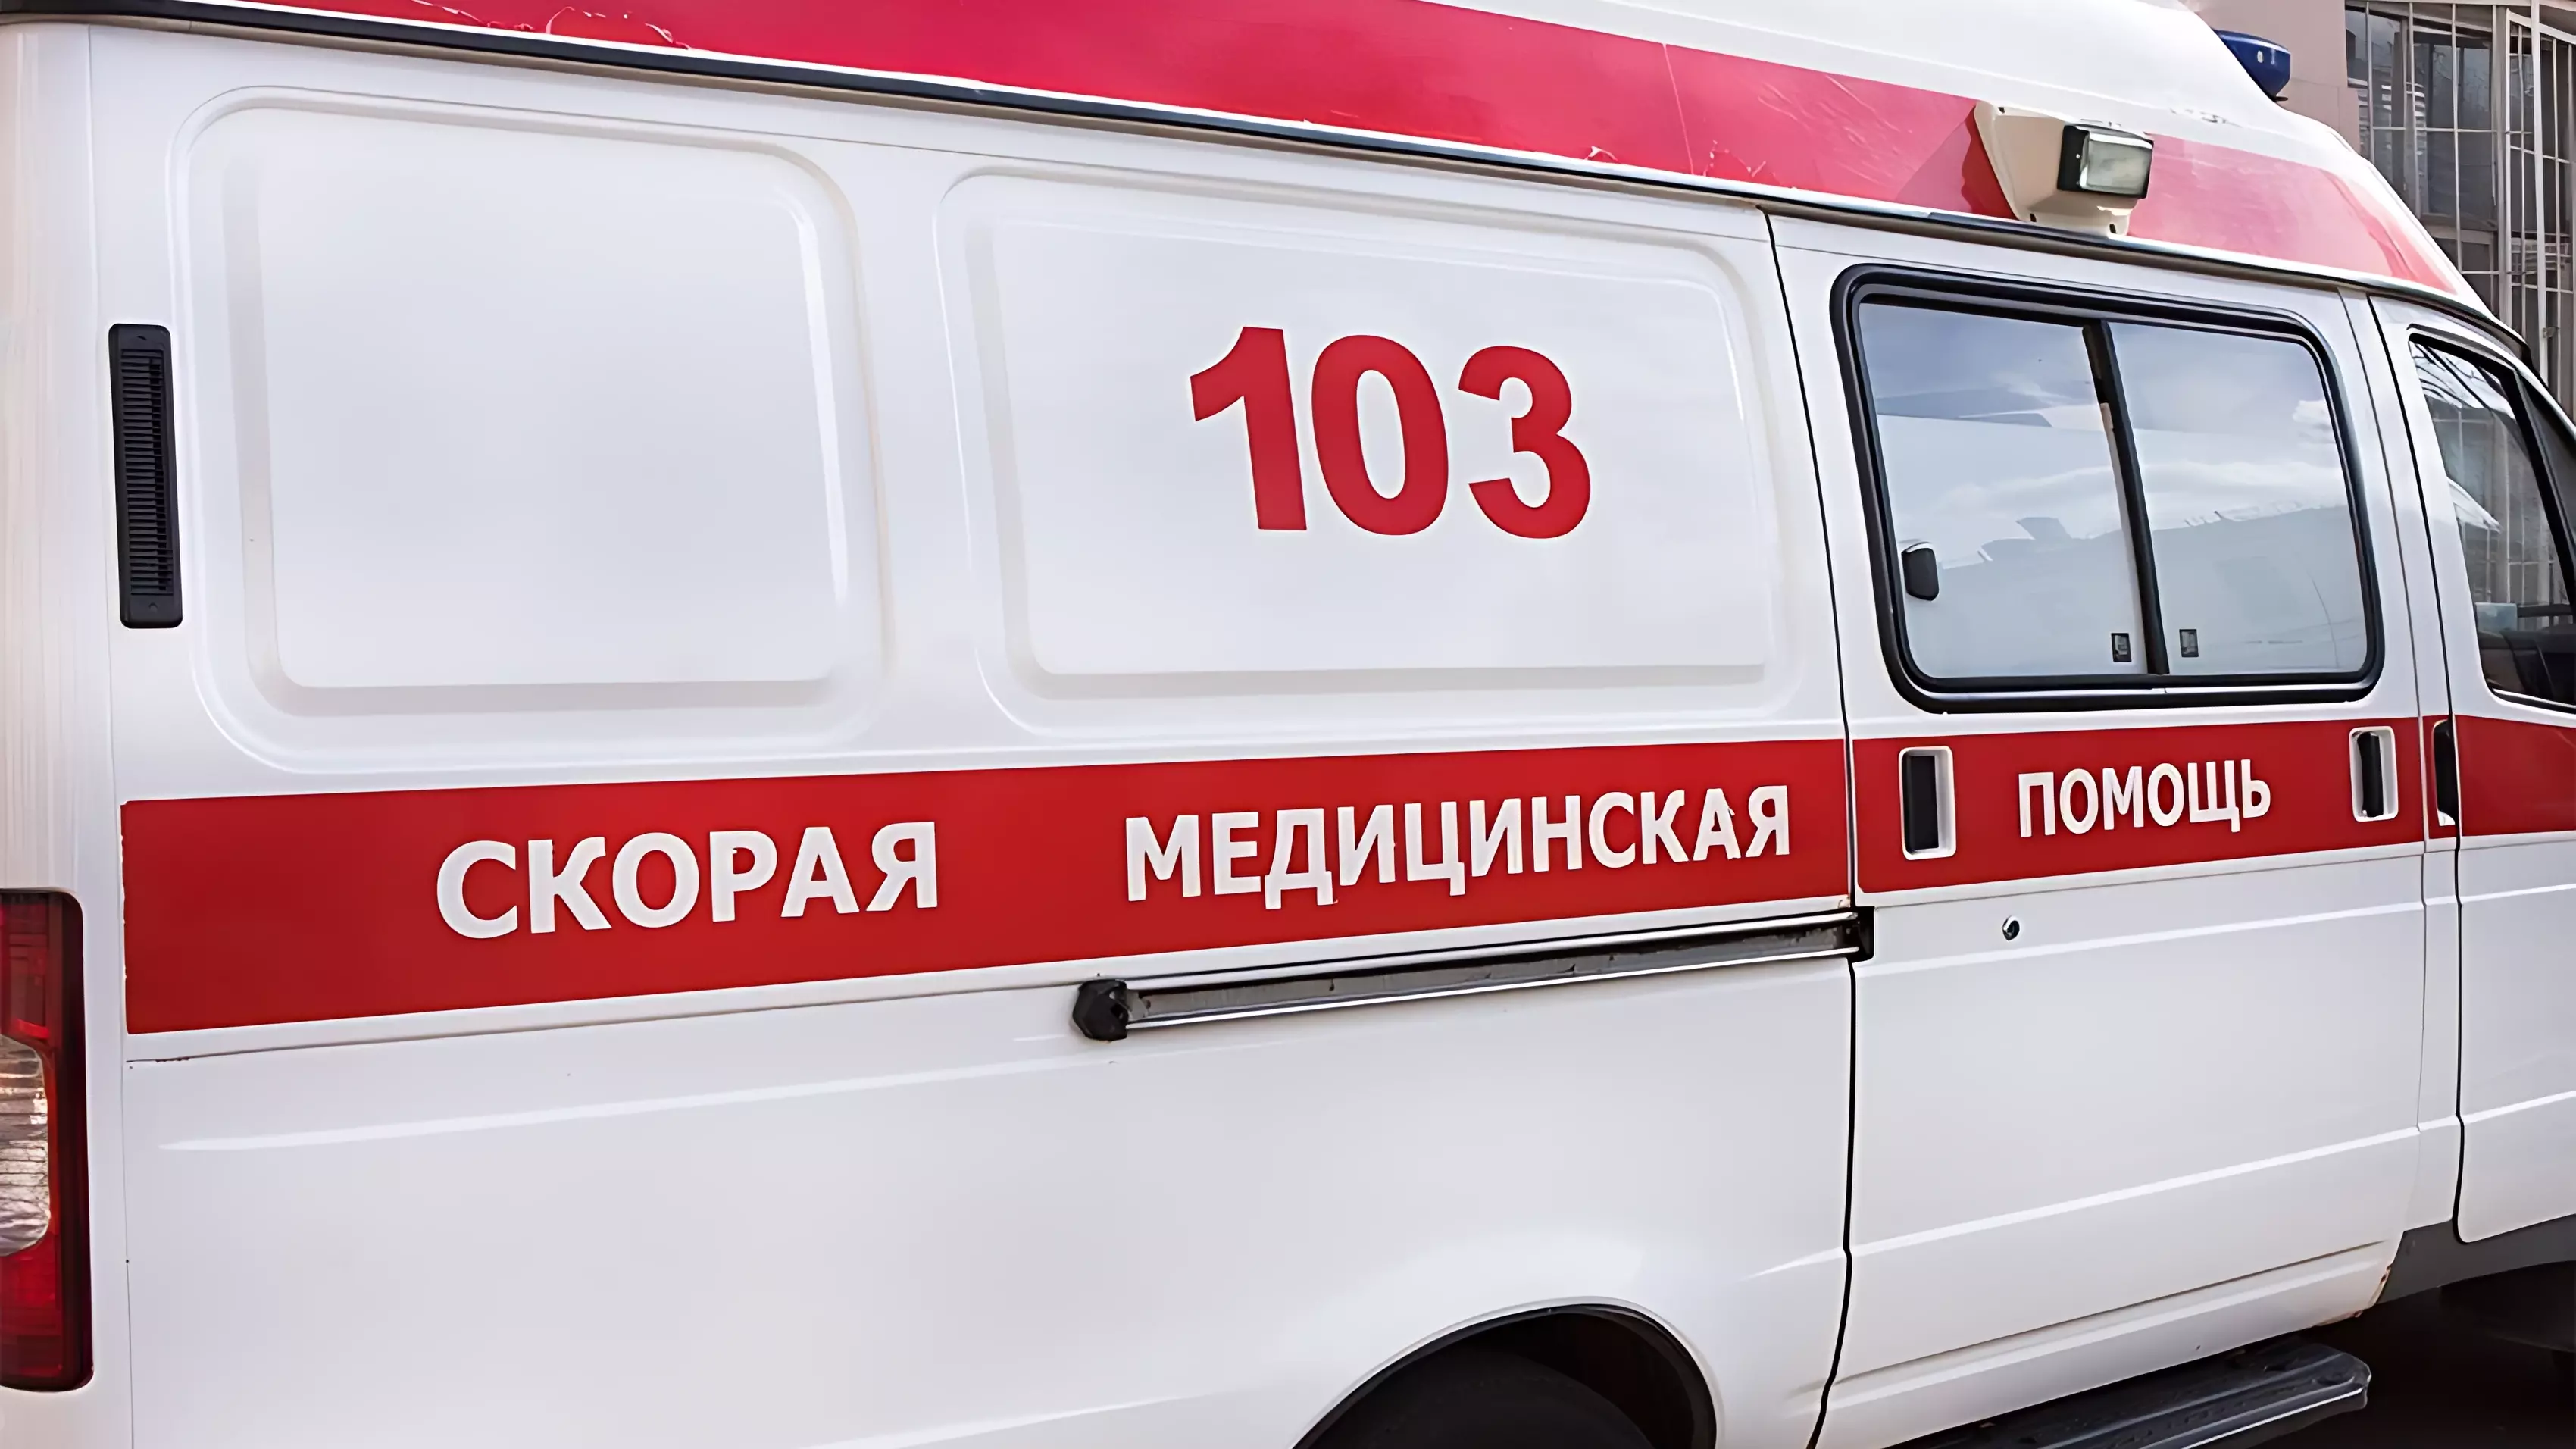 Девочка на самокате в Екатеринбурге врезалась в прохожего и сломала нос